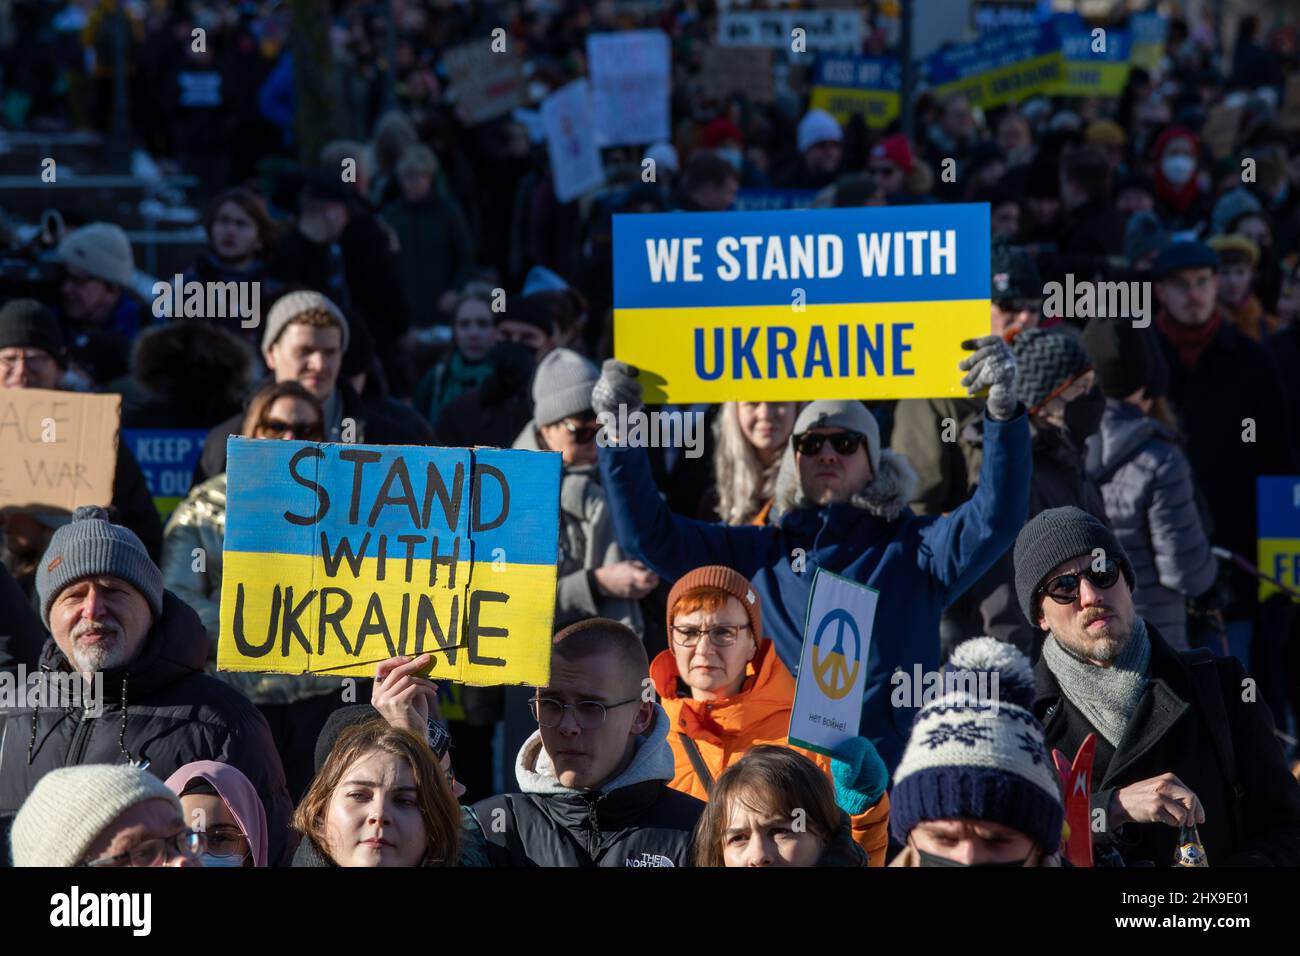 Estamos con Ucrania. Señales o pancartas en protesta contra la invasión de Ucrania en el Parque Esplanadi, Helsinki, Finlandia. Foto de stock